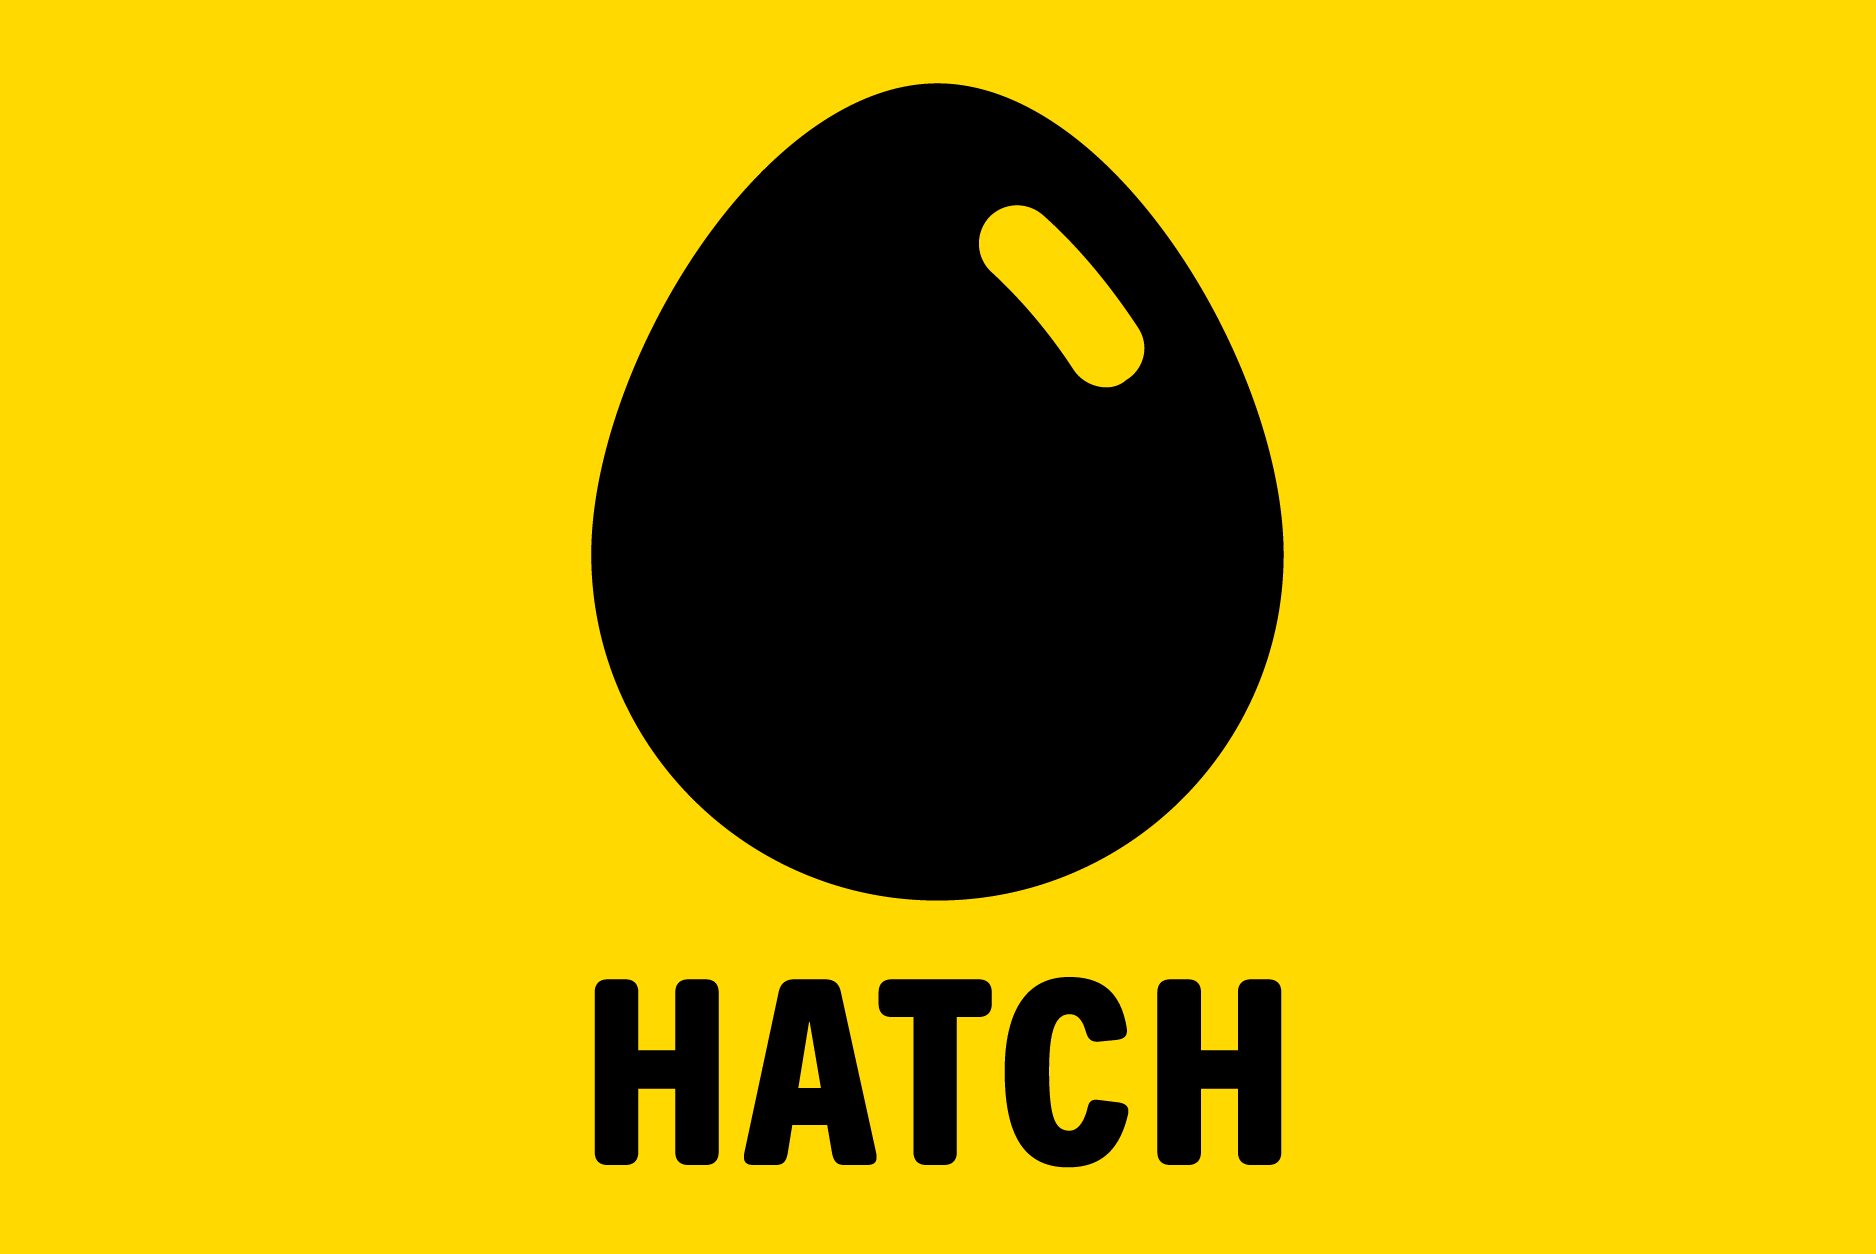 identity-03-hatch-logo-3800